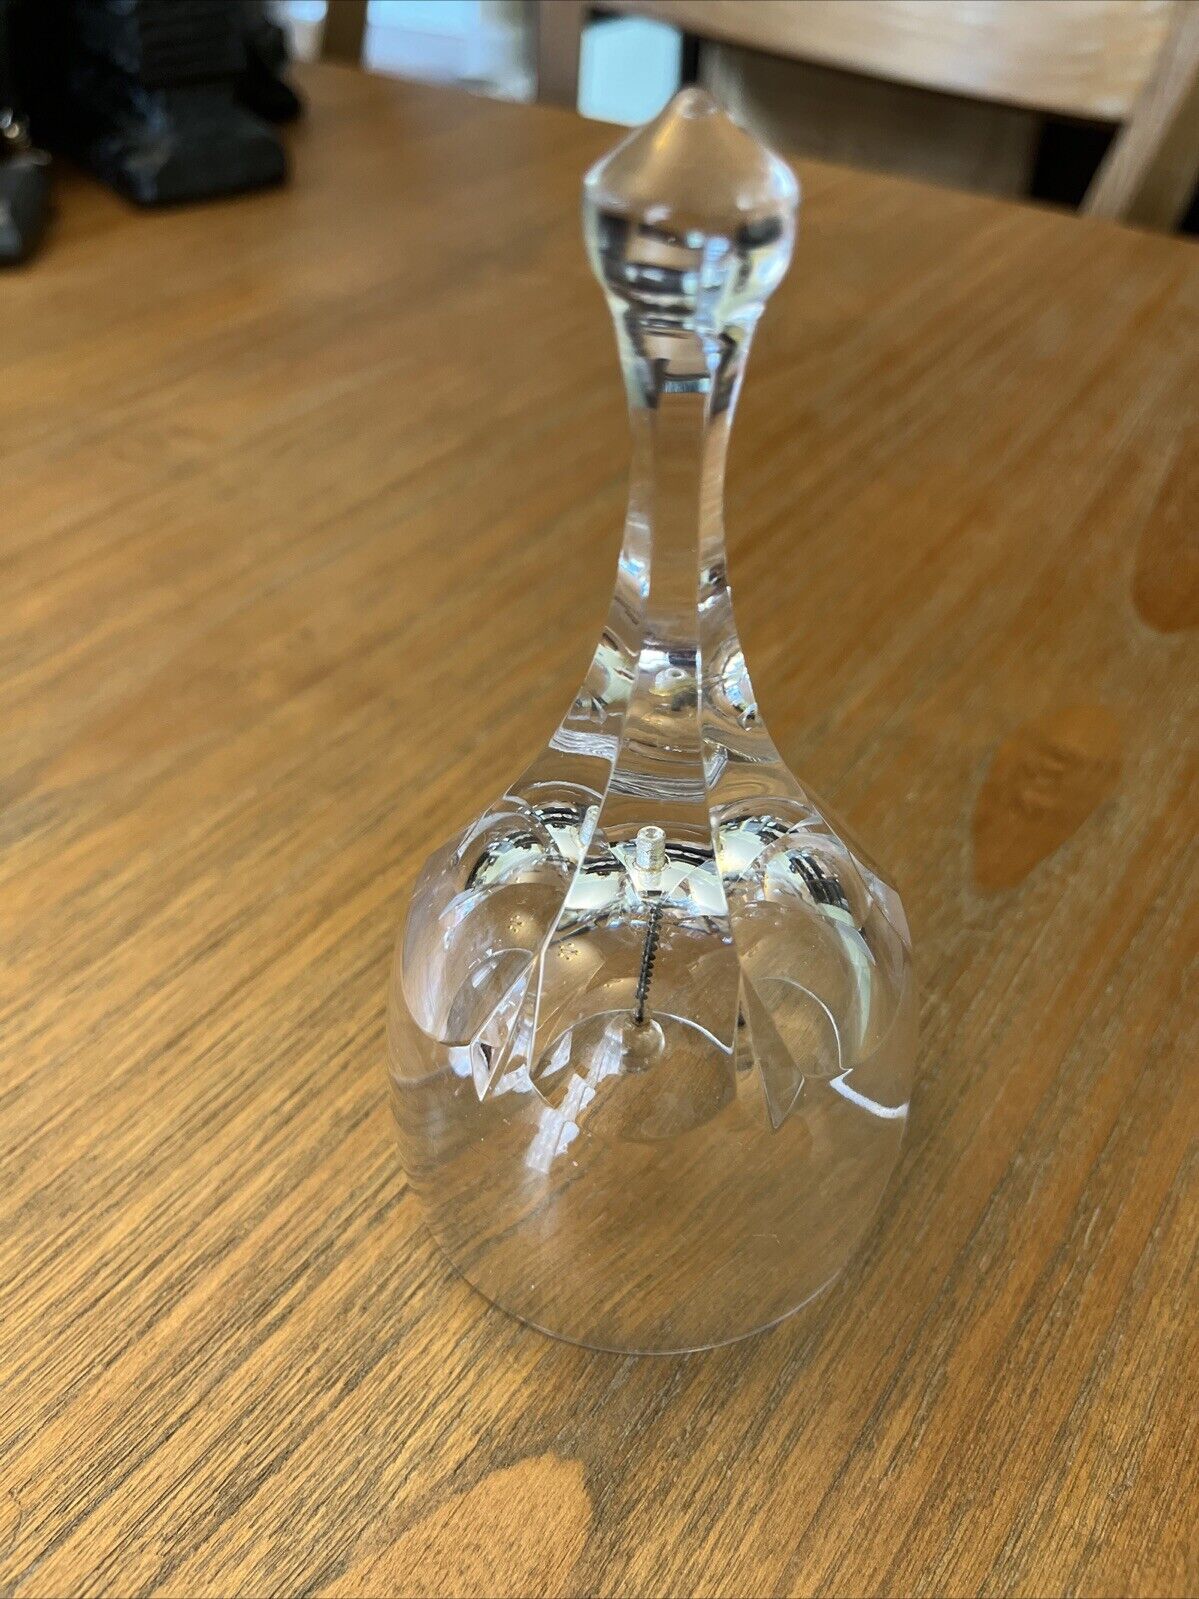 Glass Bell